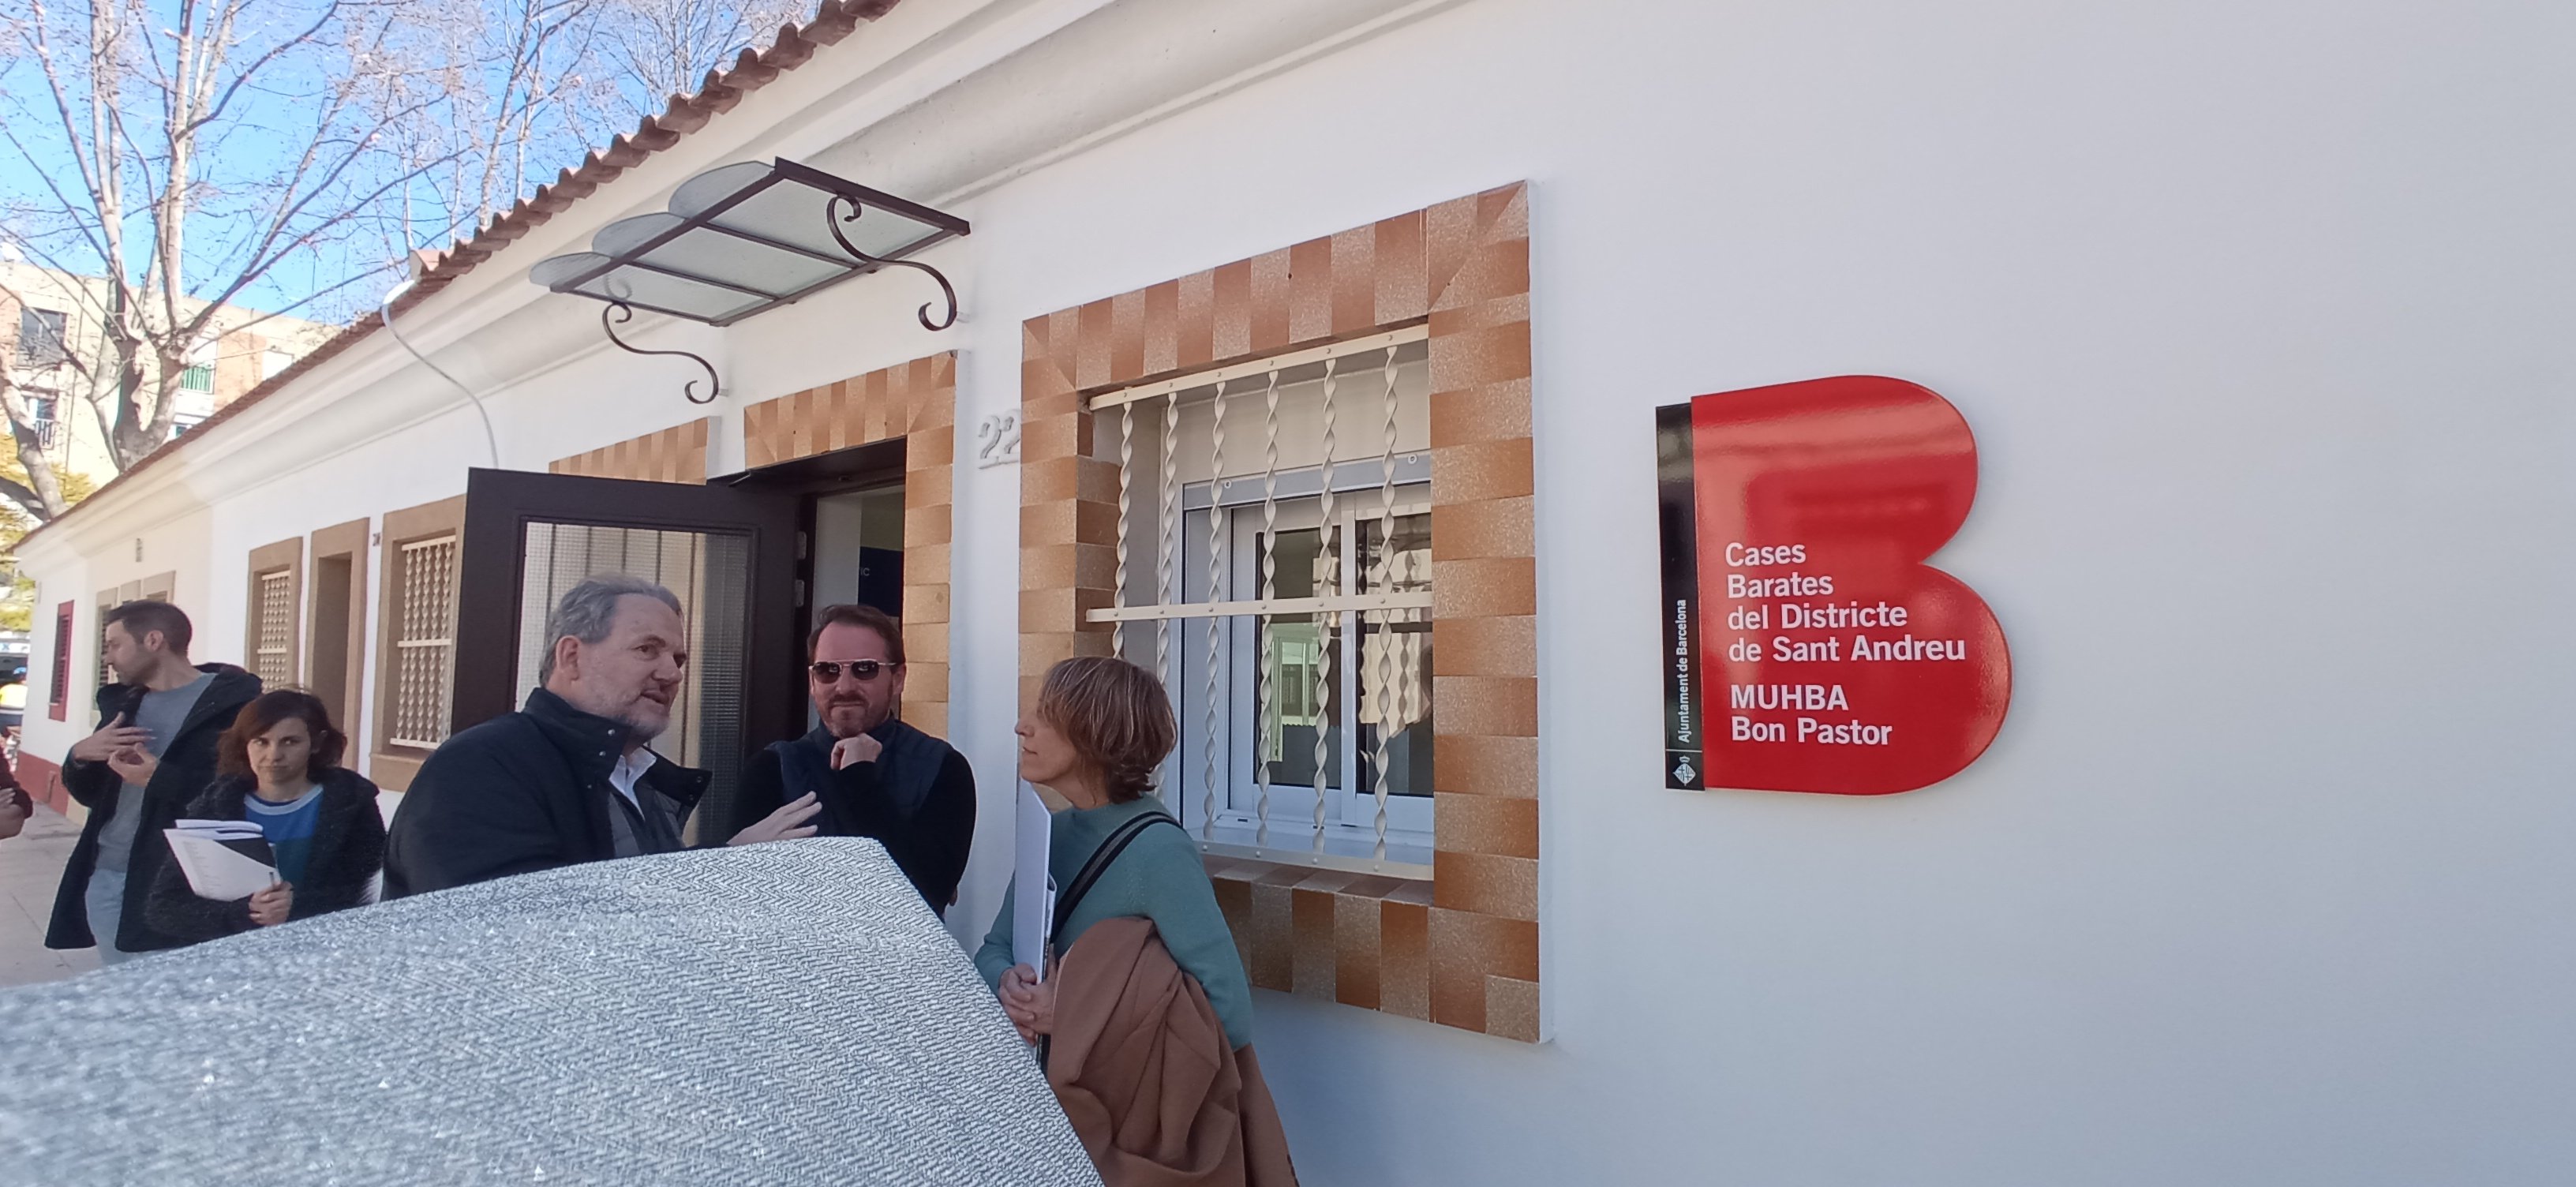 El museo de las Cases Barates del Bon Pastor, o cómo explicar Barcelona desde la periferia